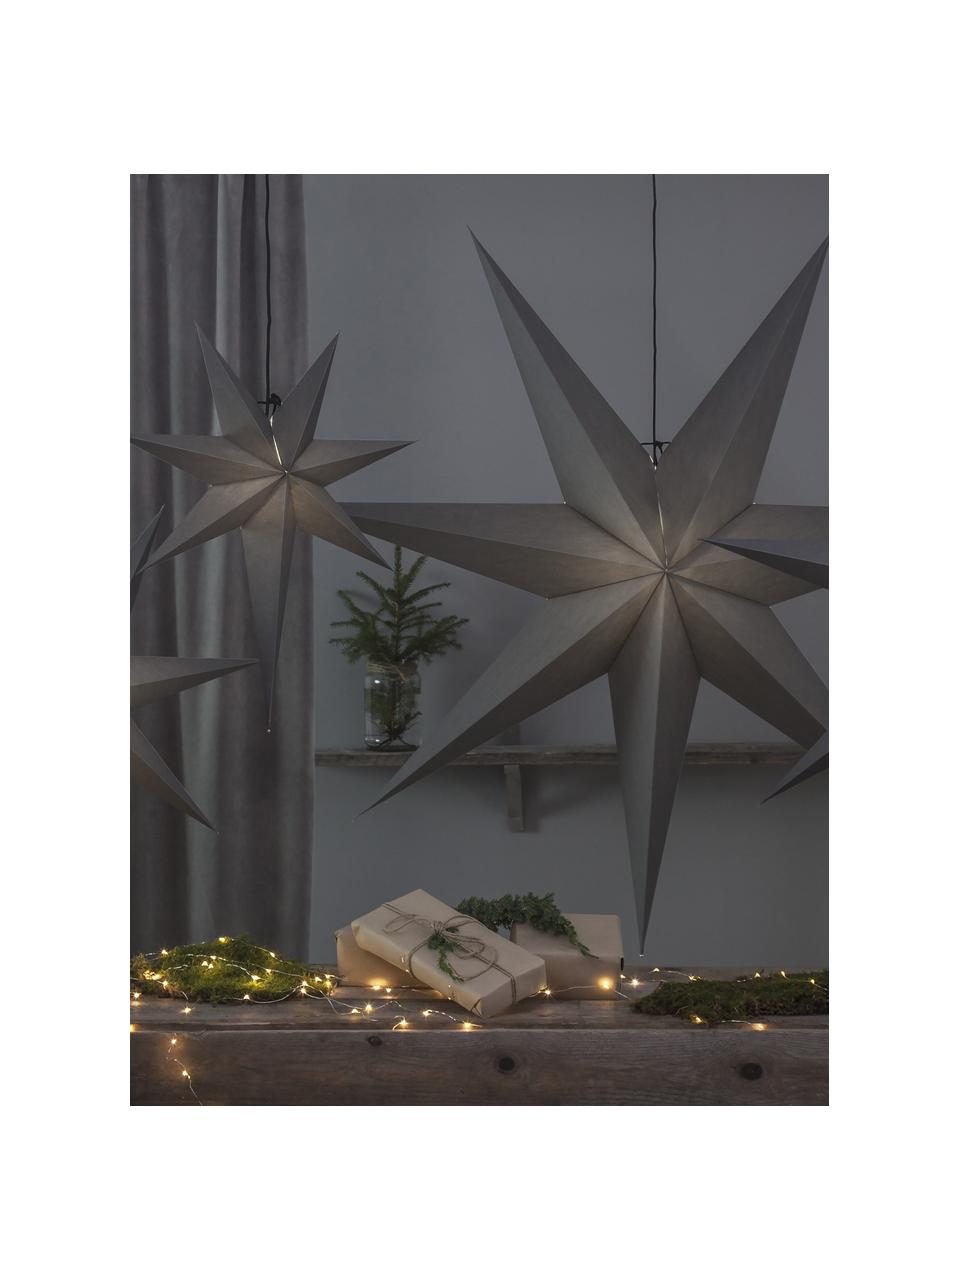 Estrella luminosa de papel Ozen, Papel, Gris, Ø 70 cm